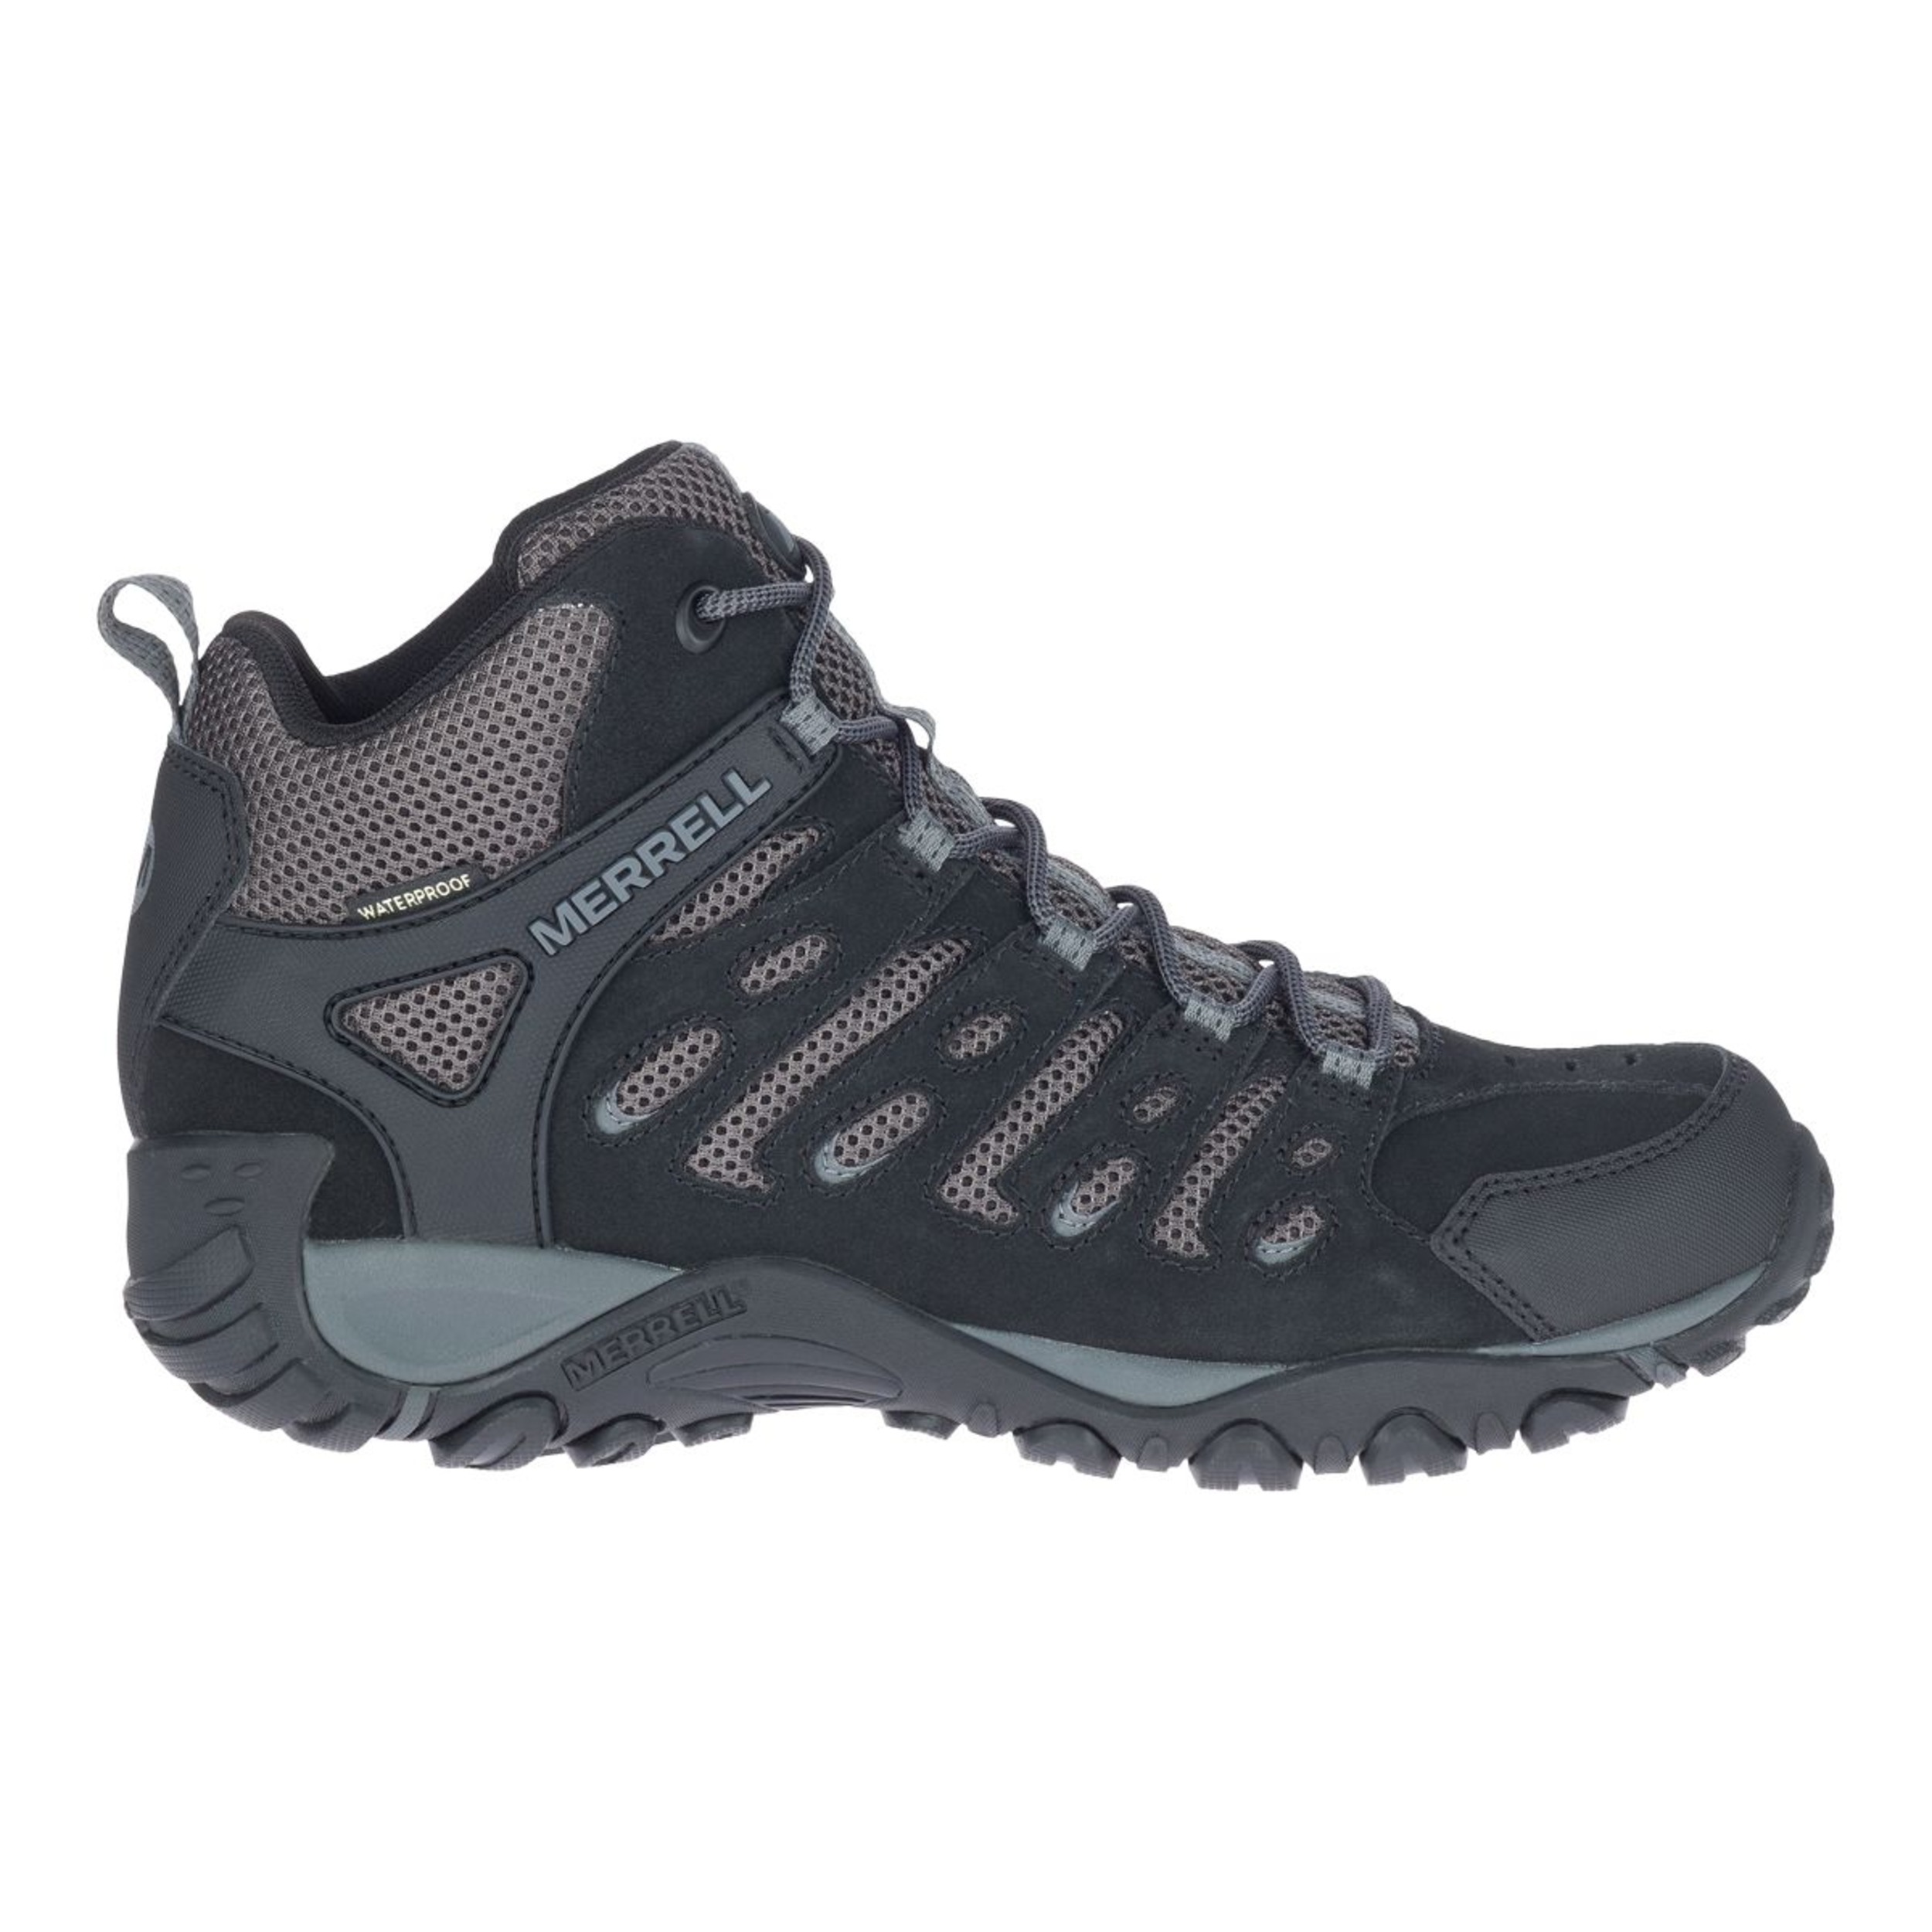 Merrell Men's Crosslander 2 Hiking Boots, Waterproof | SportChek